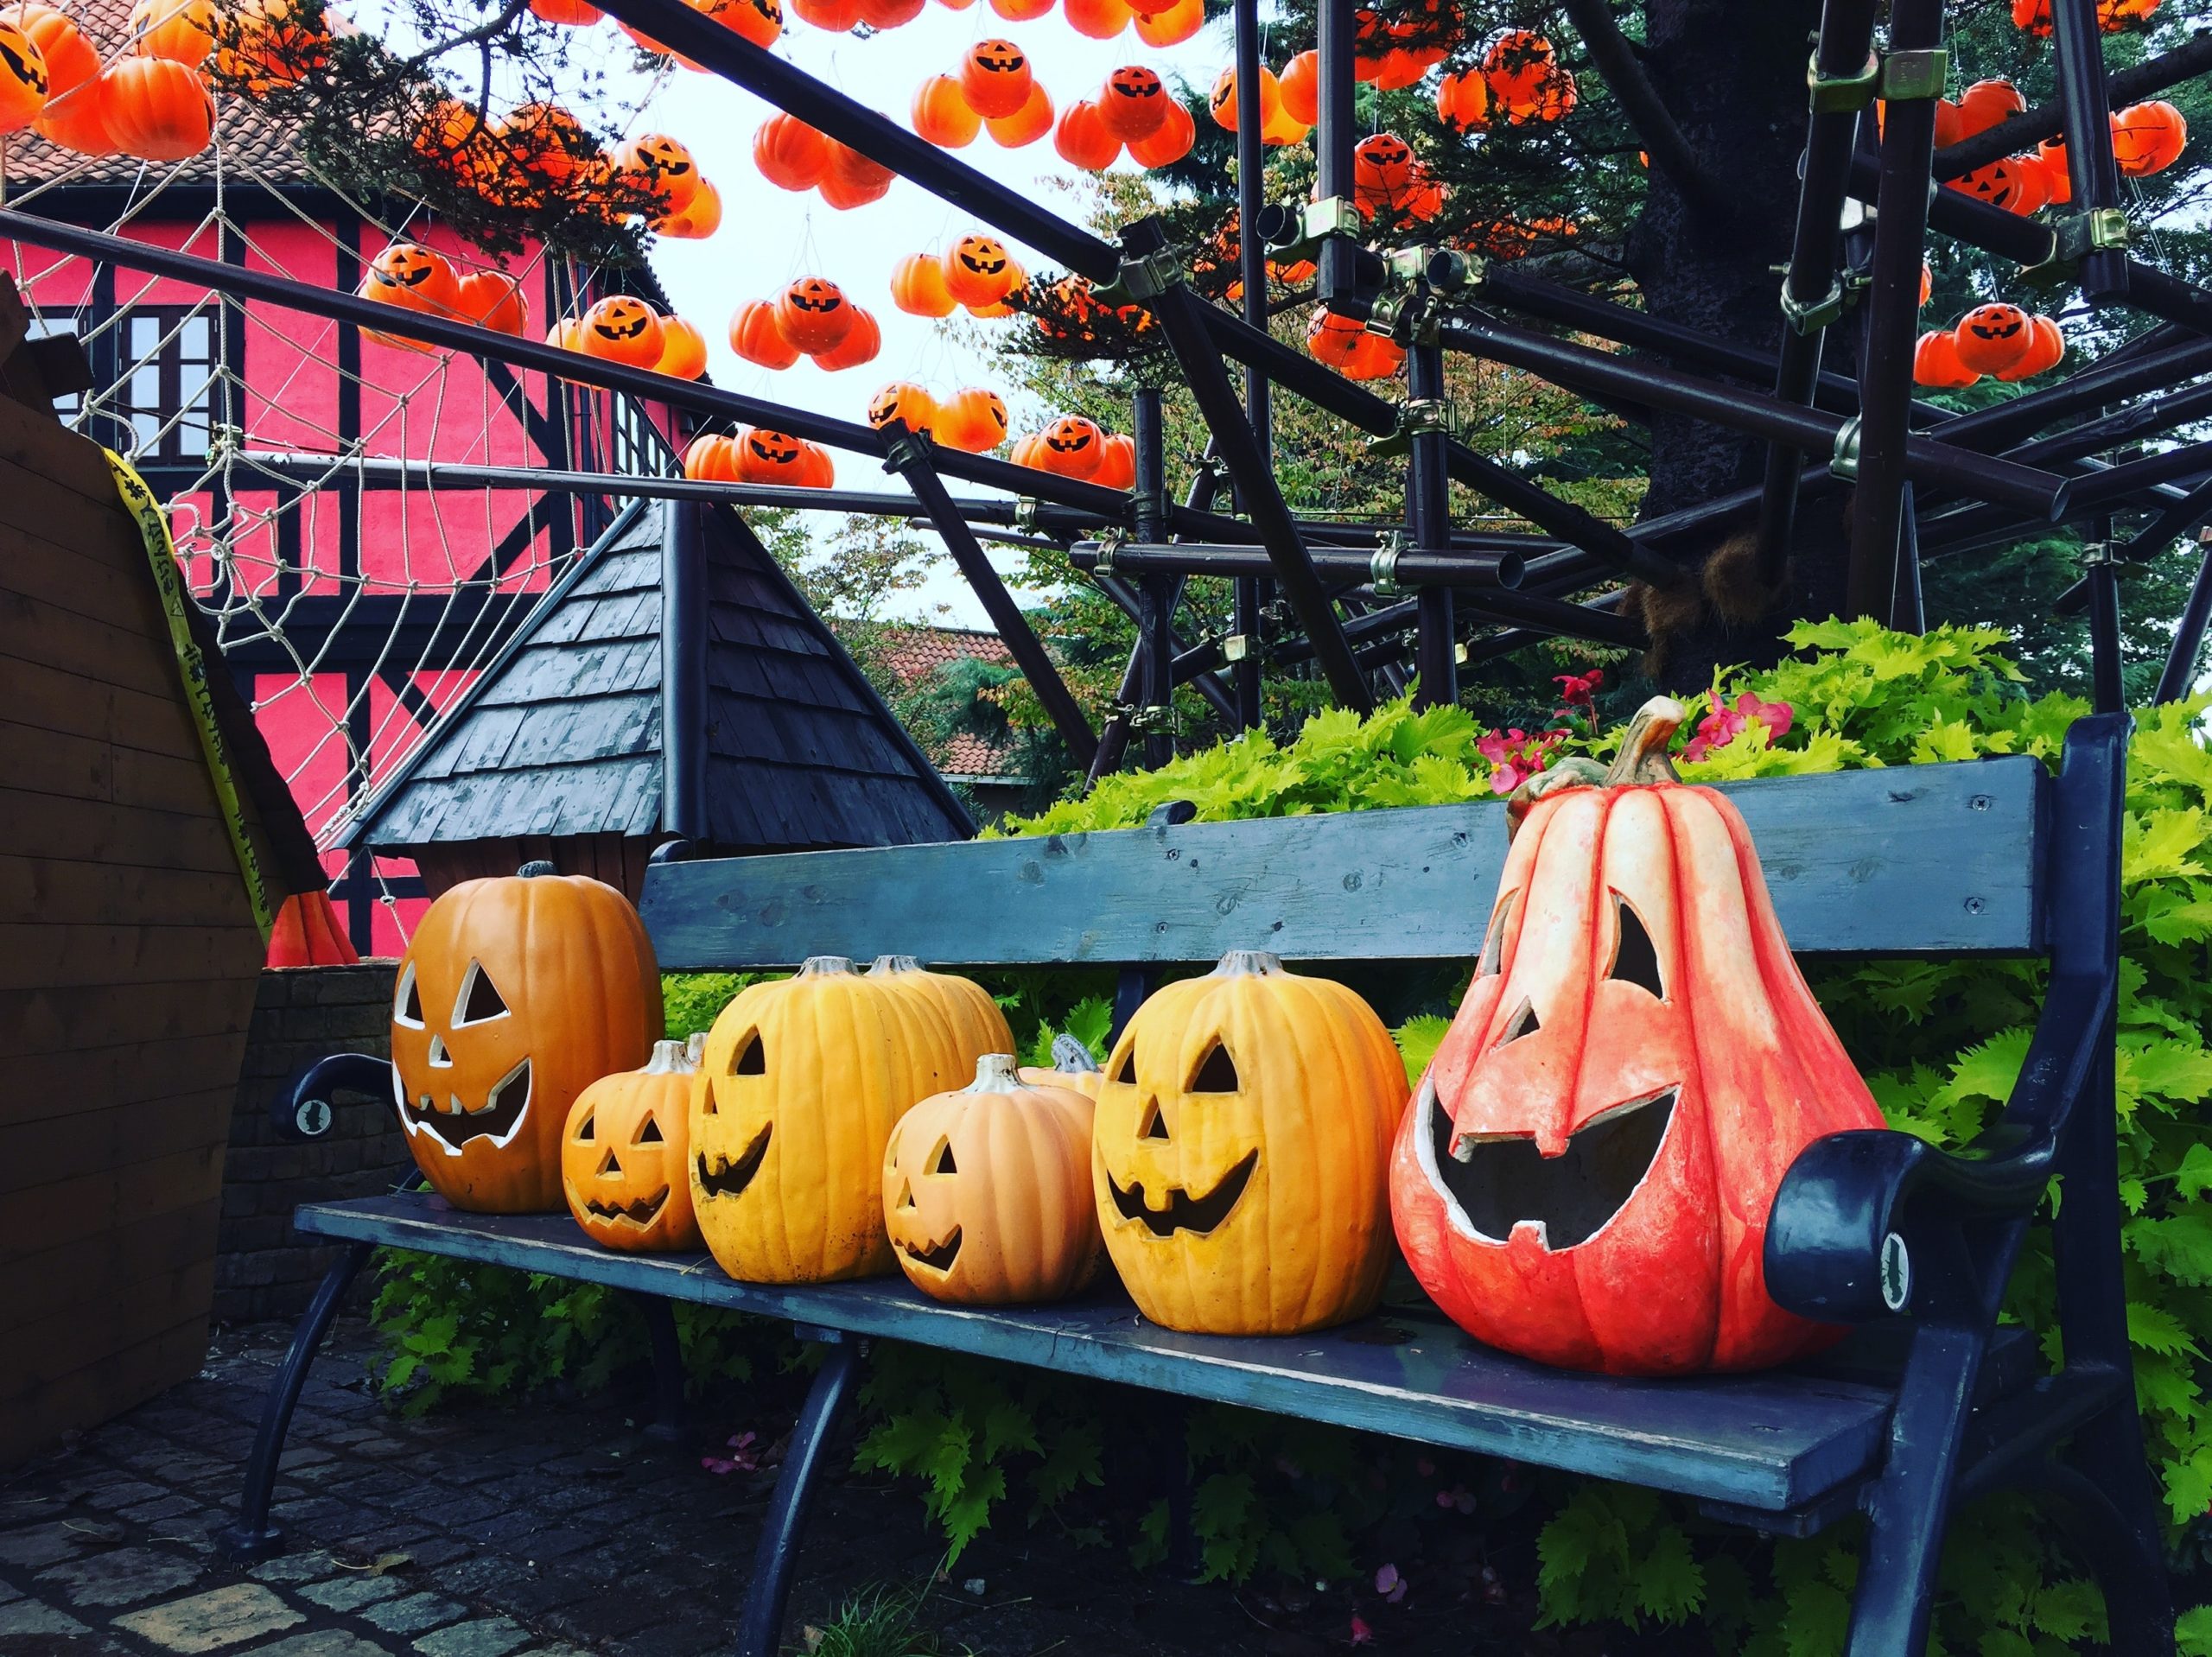 Sechs Kürbisse in allen verschiedenen Größen für Halloween geschnitzt. Eine Fundraising-Idee zum Thema Herbst